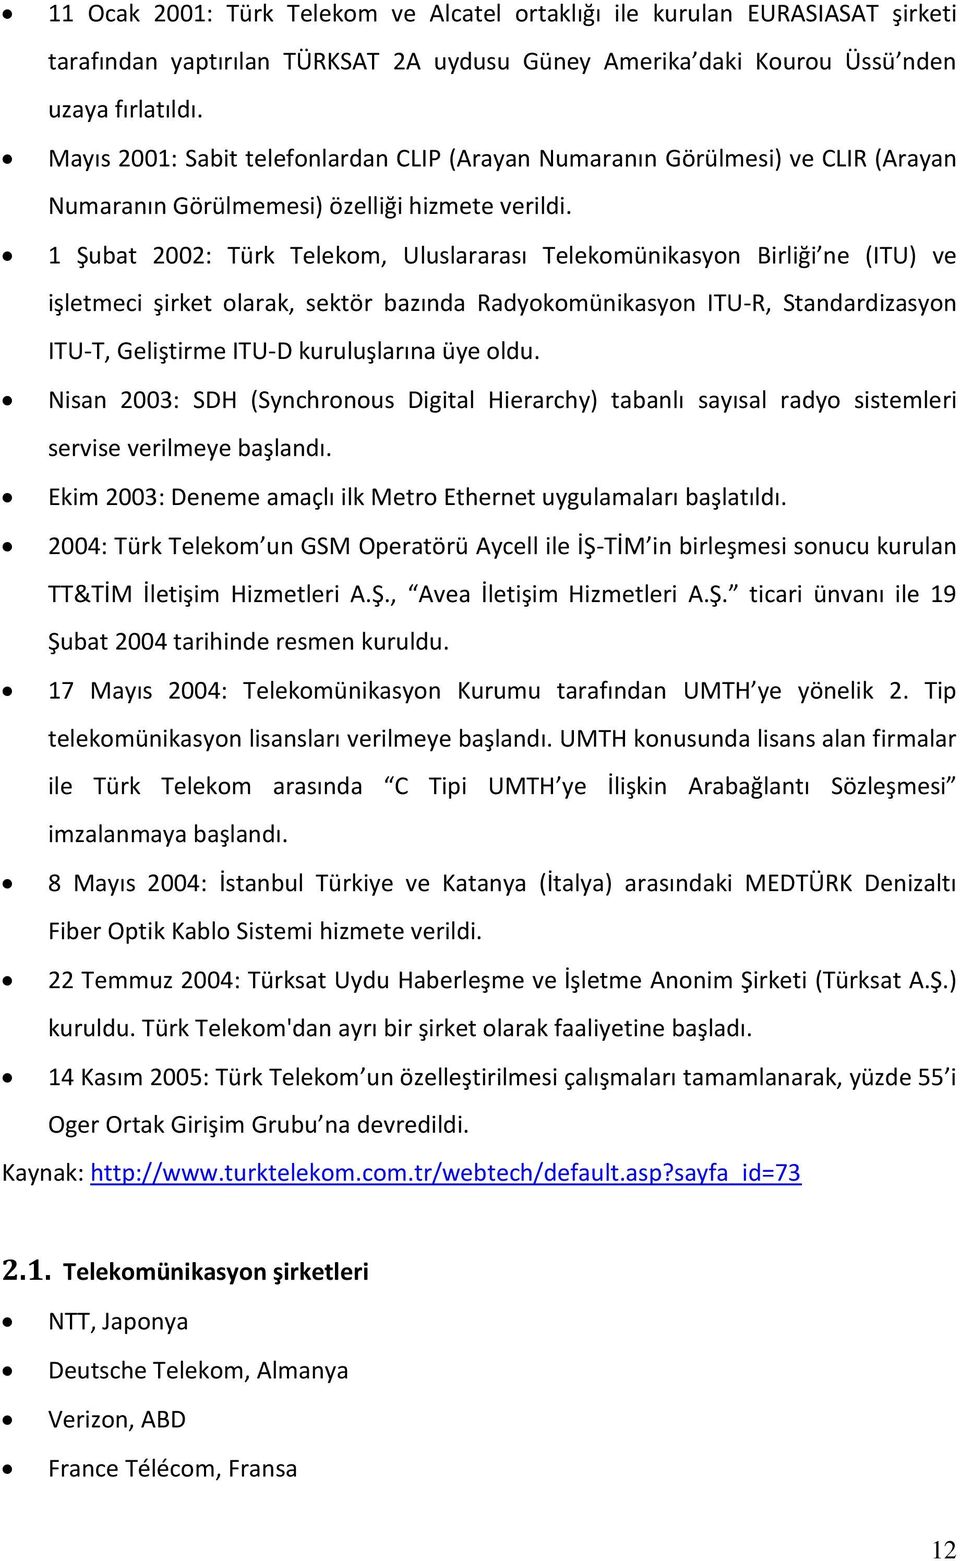 1 Şubat 2002: Türk Telekom, Uluslararası Telekomünikasyon Birliği ne (ITU) ve işletmeci şirket olarak, sektör bazında Radyokomünikasyon ITU-R, Standardizasyon ITU-T, Geliştirme ITU-D kuruluşlarına